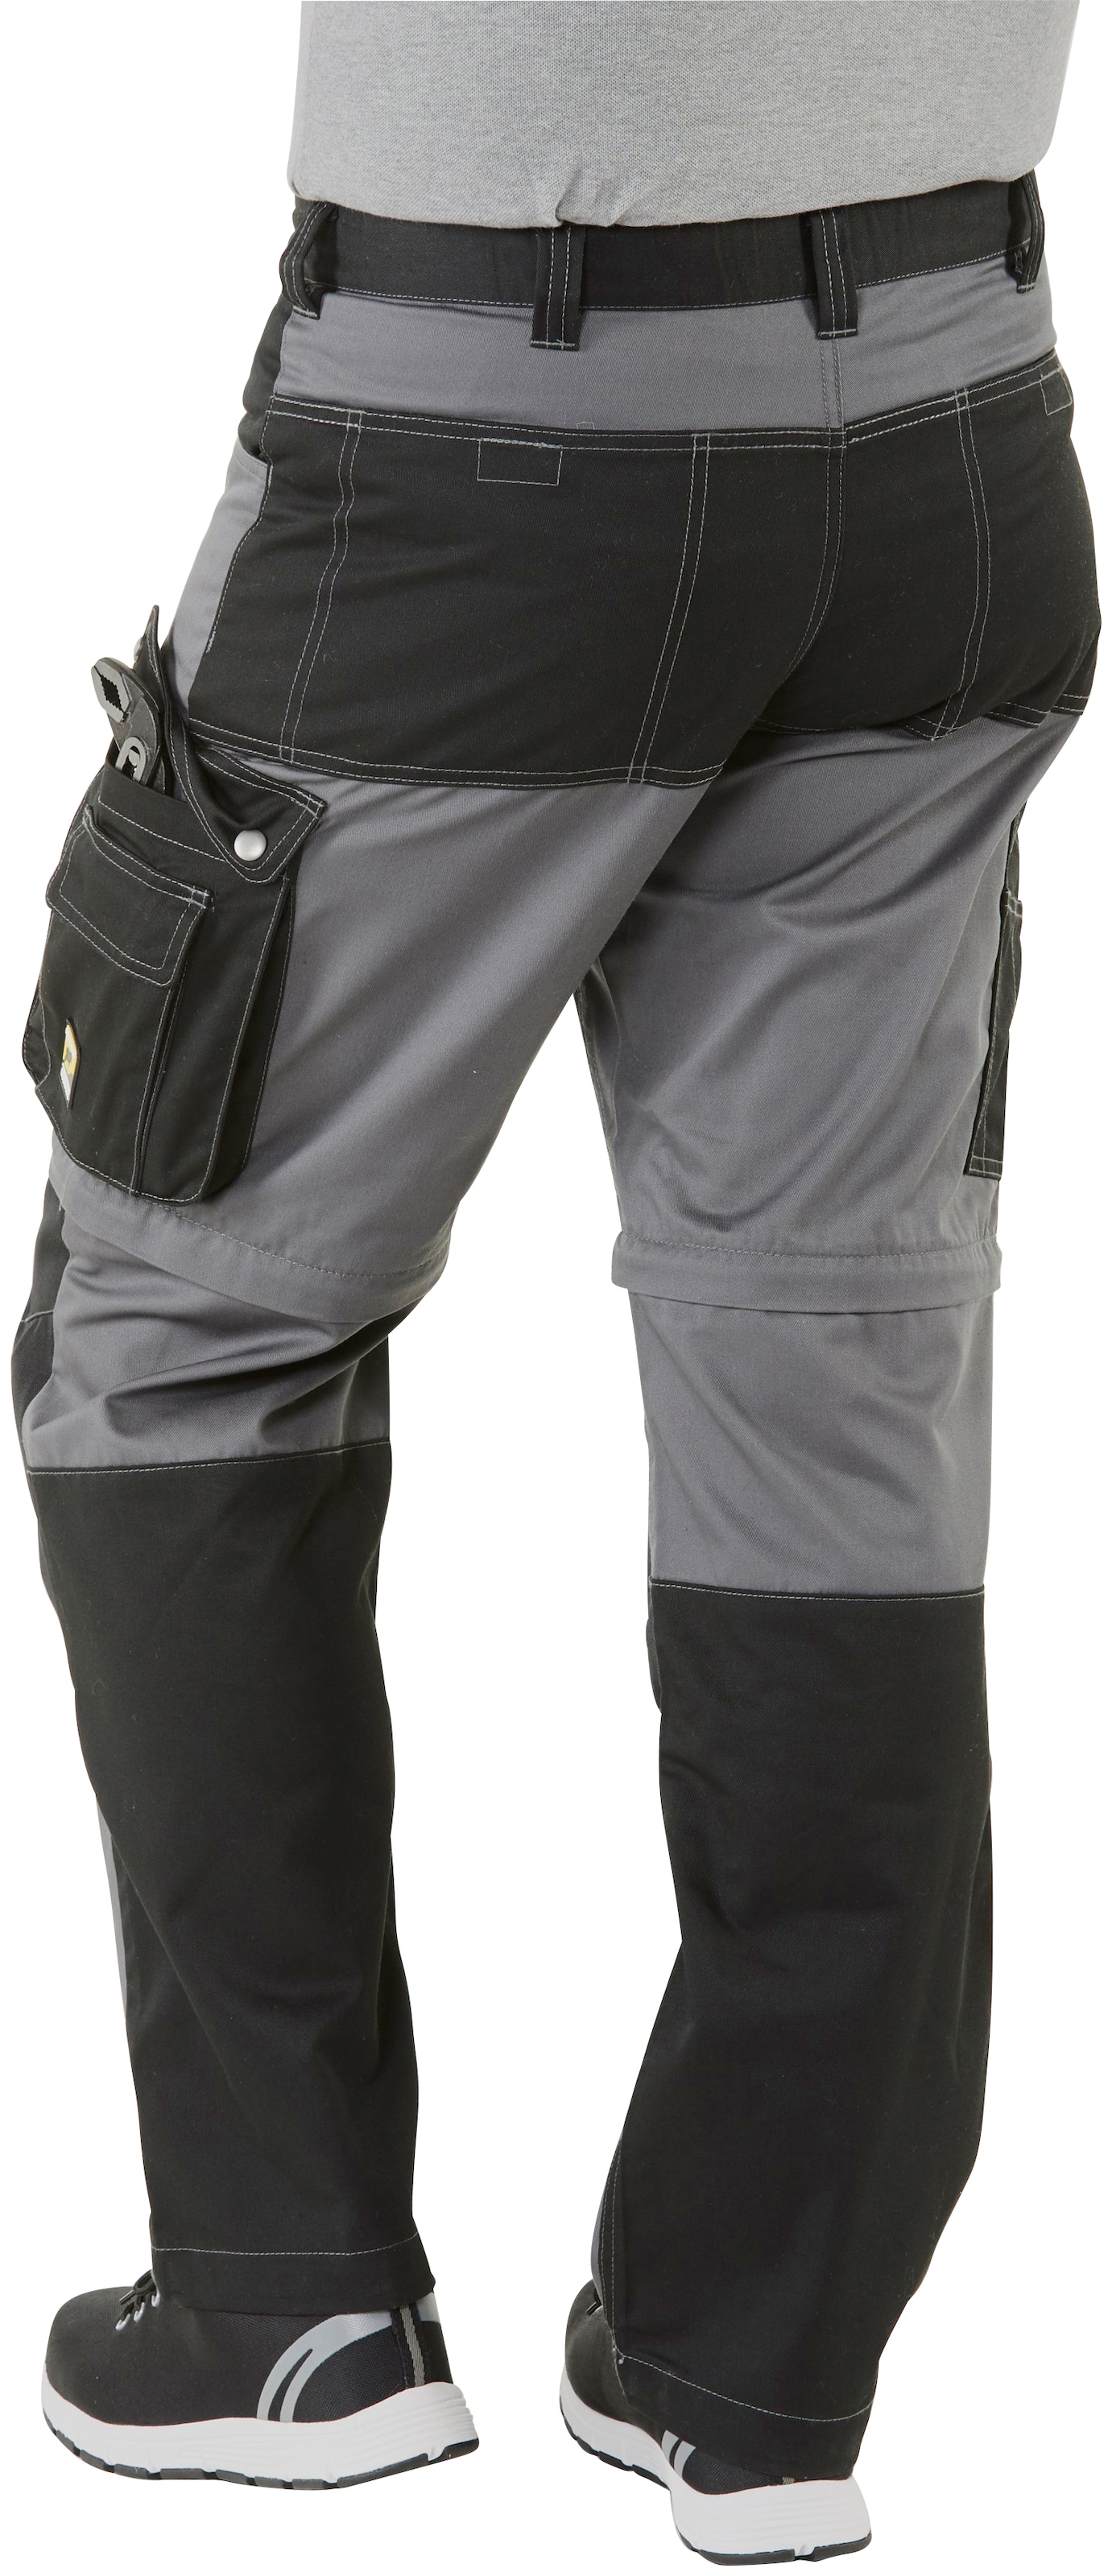 Northern Country Arbeitshose »Worker«, (verstärkter Kniebereich, Beinverlängerung  möglich, 8 Taschen), mit Zipp-off Funktion: Shorts und lange Arbeitshose in  einem online kaufen